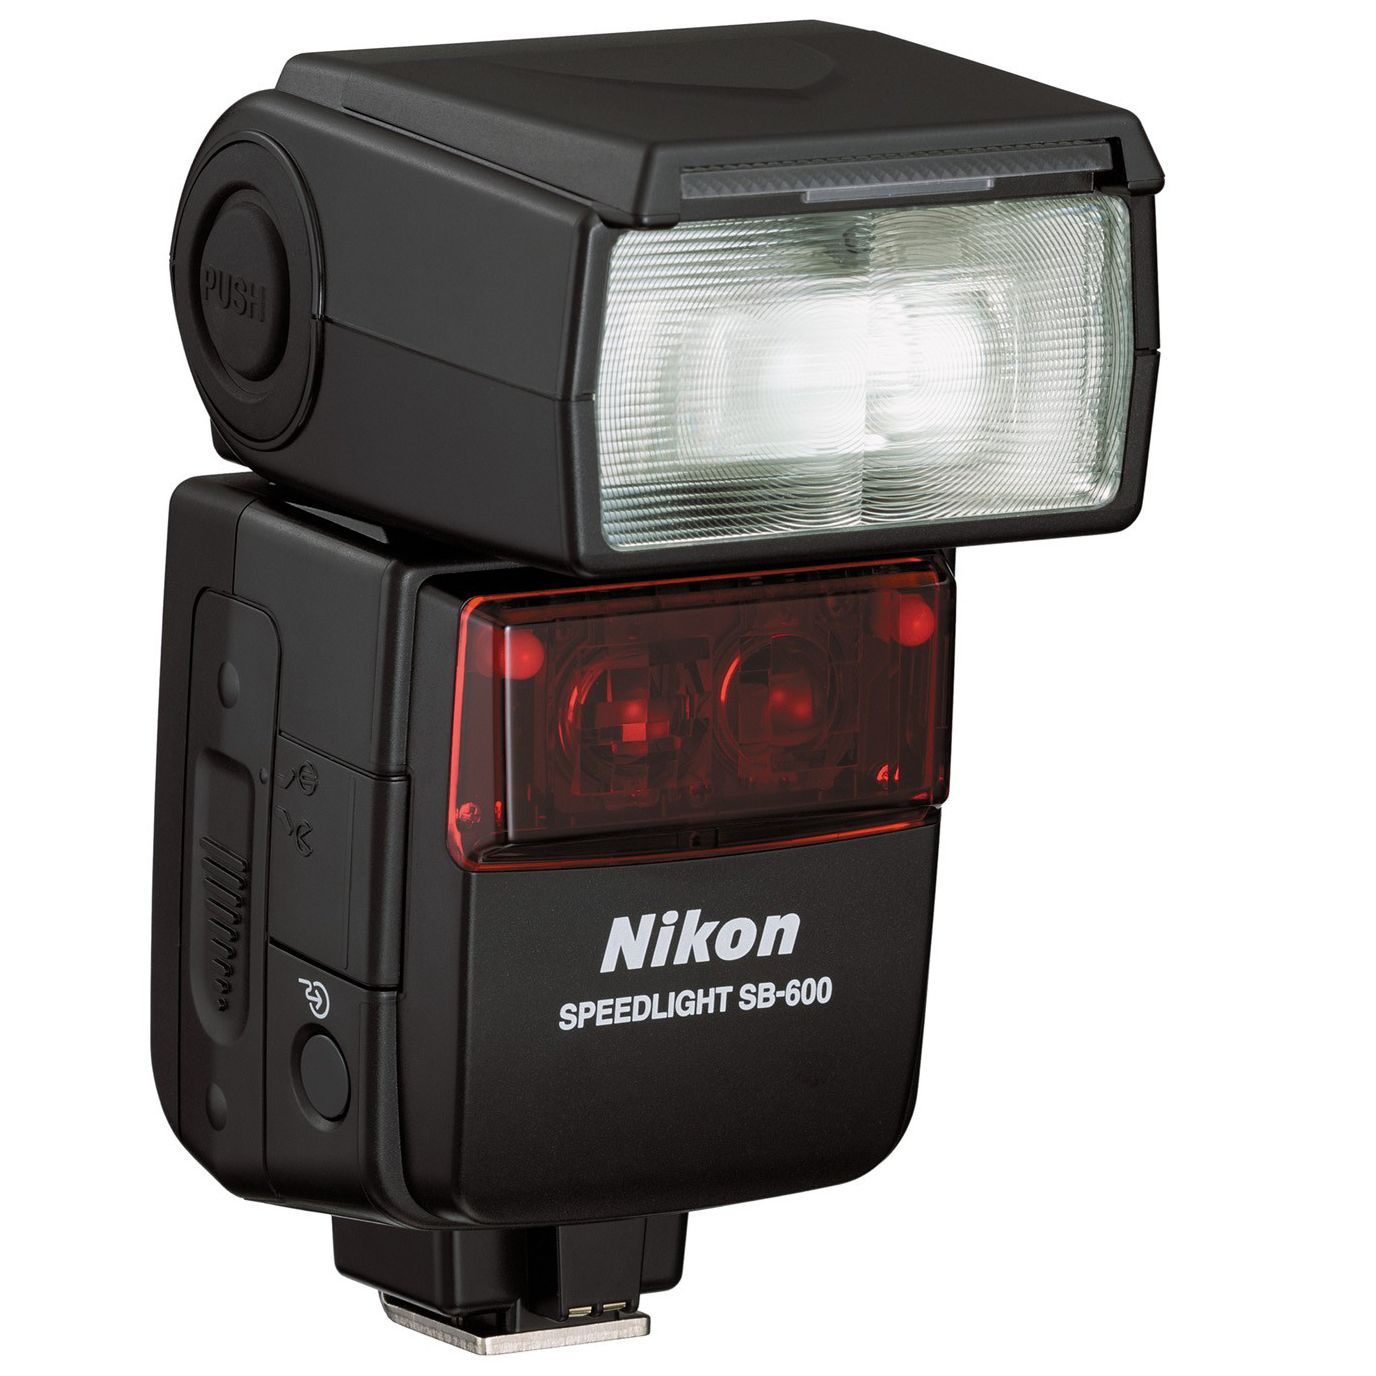 Nikon SB-600 Speedlight Flash at John Lewis